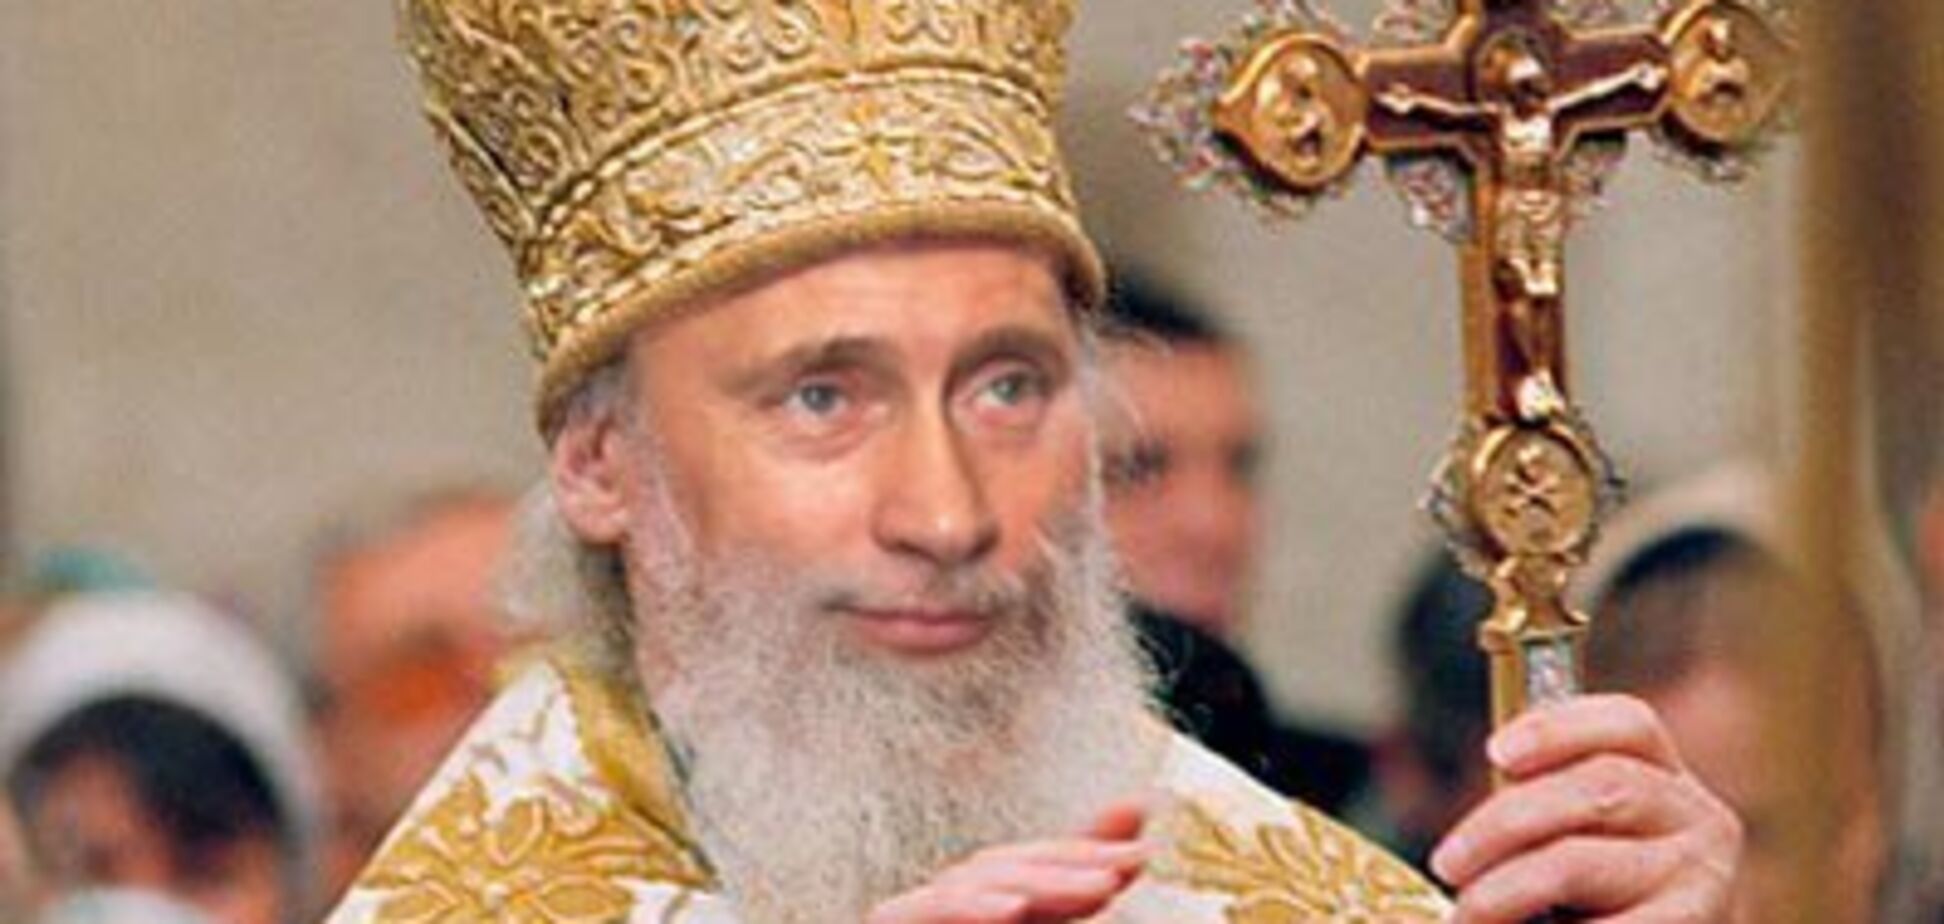 'Признак святости': 'особые' гены Путина едко высмеяли в сети